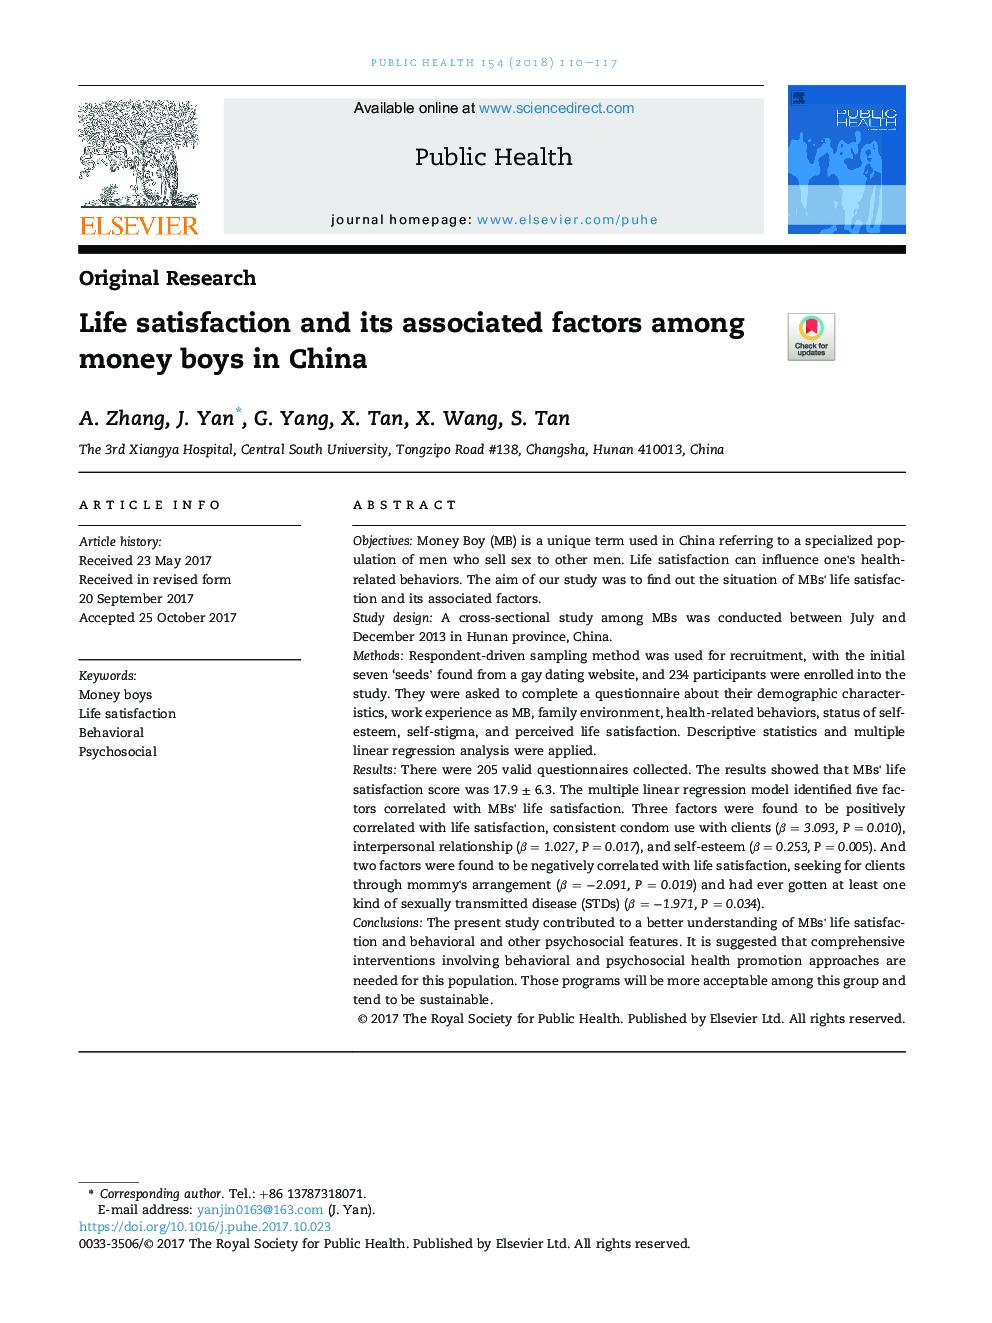 رضایت از زندگی و عوامل مرتبط با آن در پسران پول در چین 